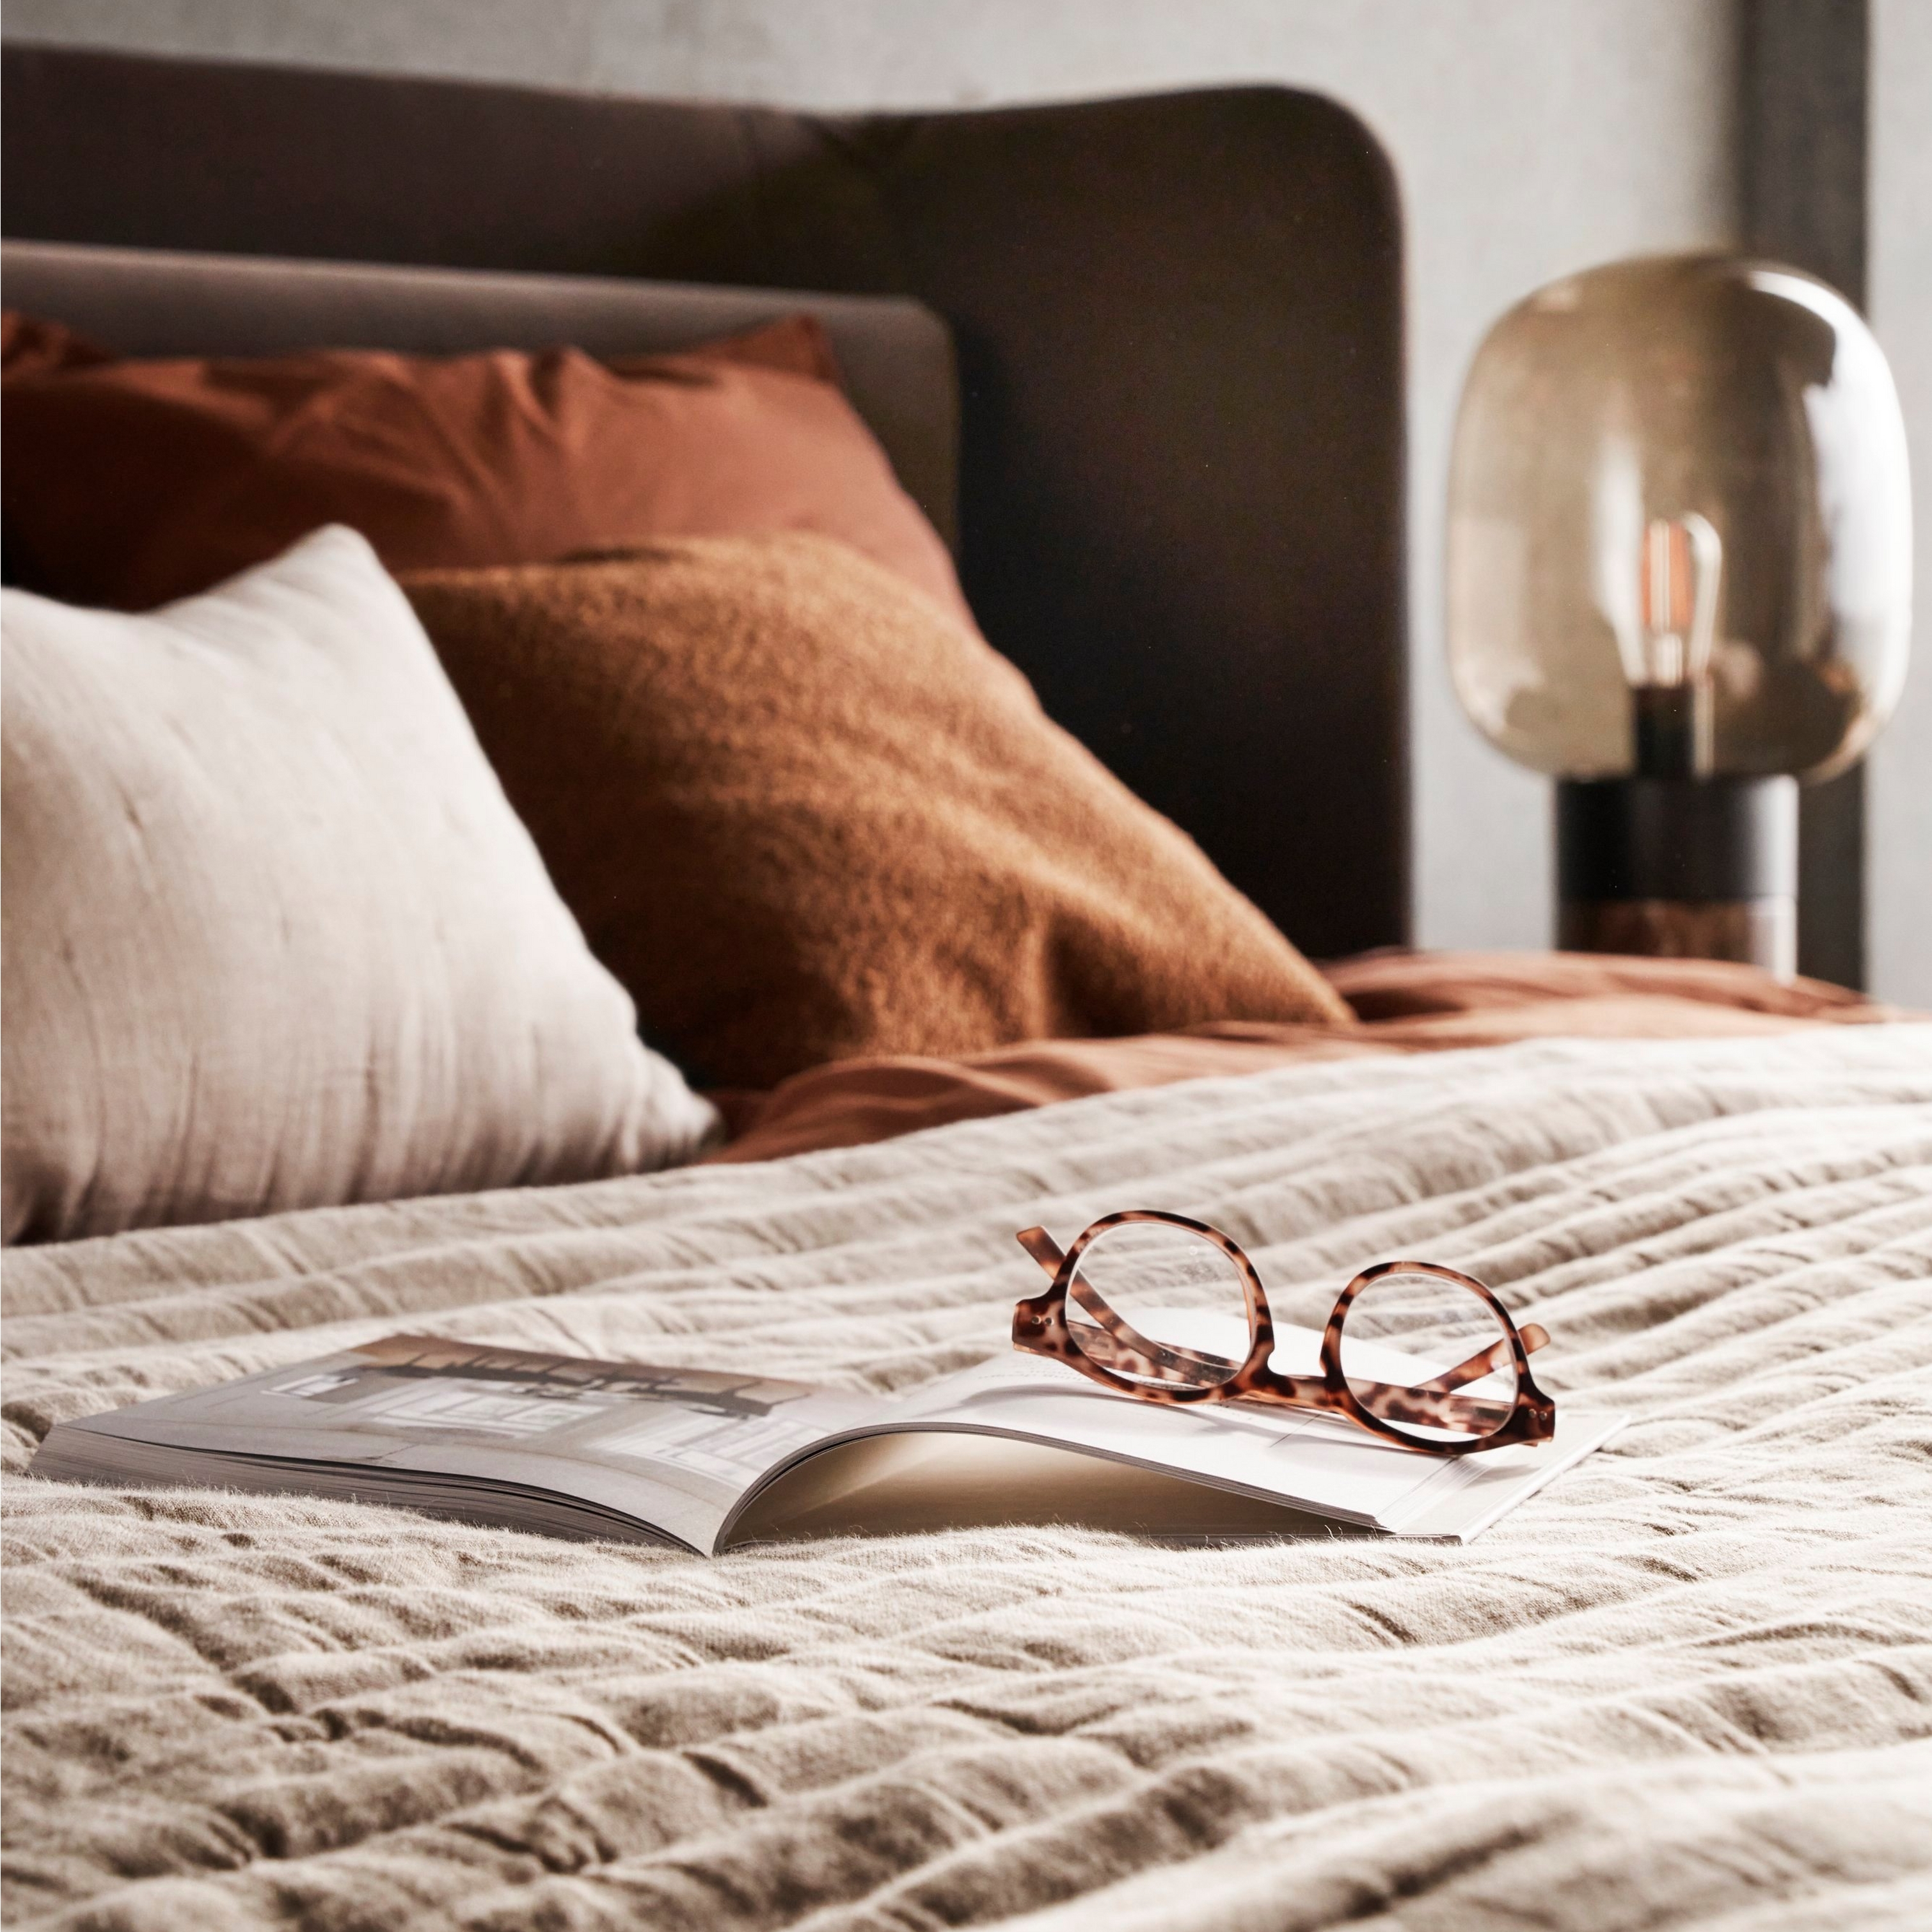 Seng med teksturert sengetøy, briller på åpen bok og mykt sengelys.